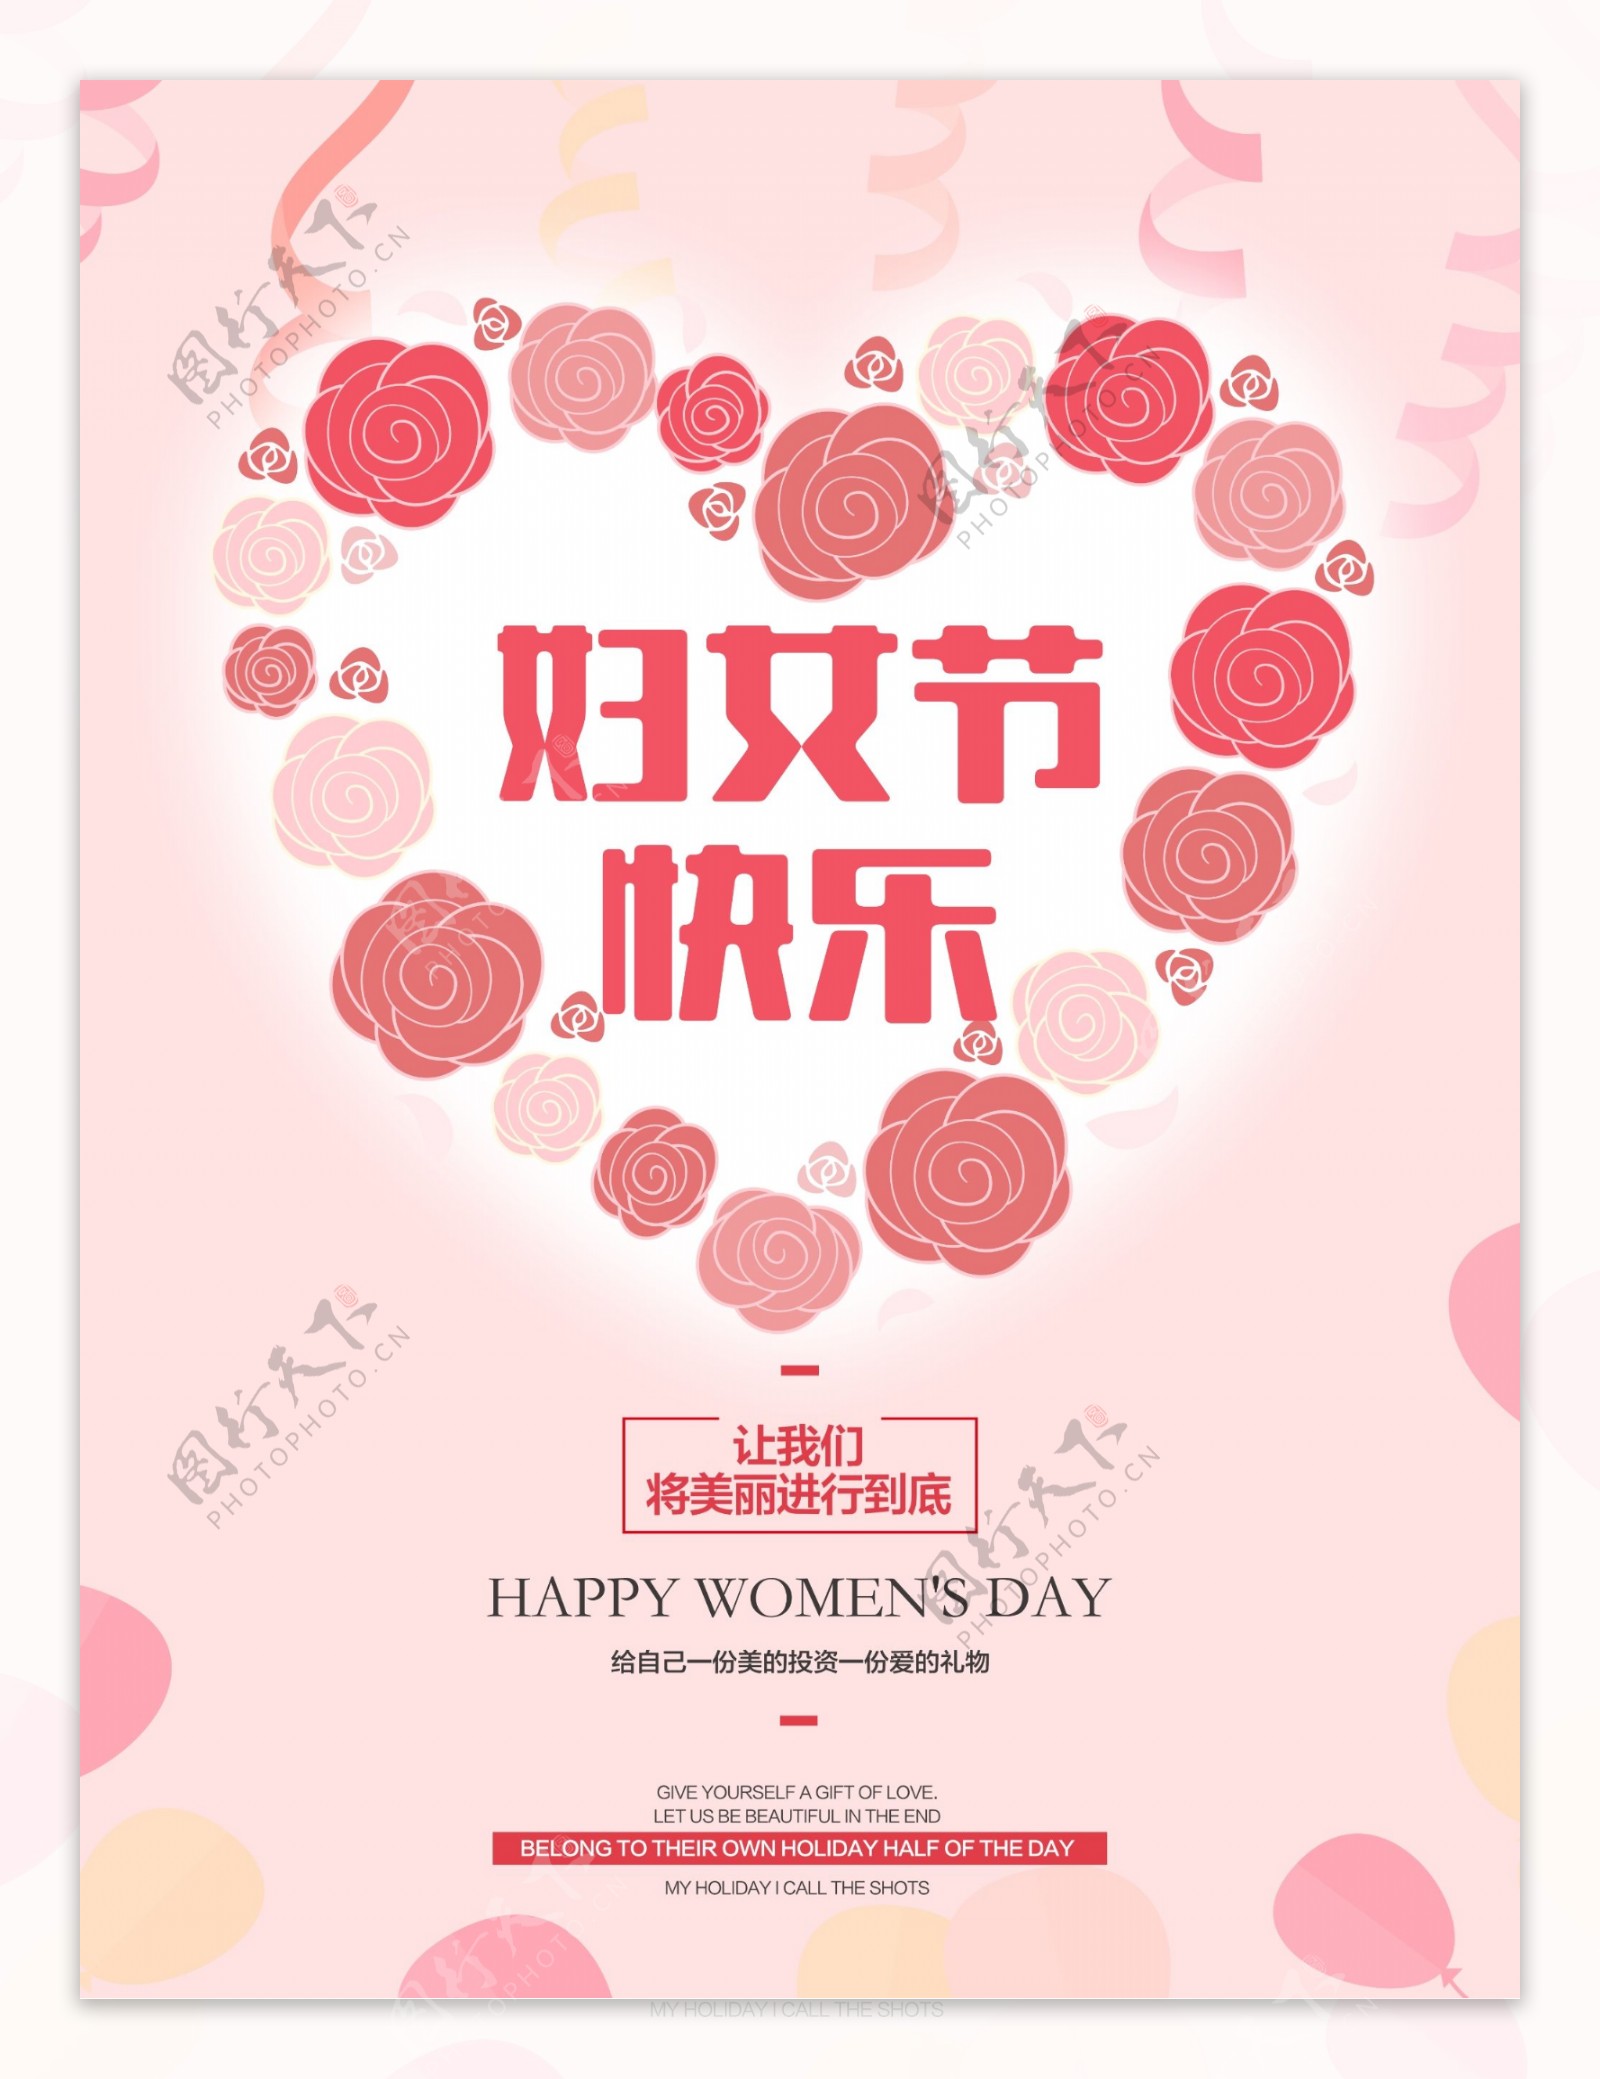 三八妇女节快乐节日海报贺图宣传